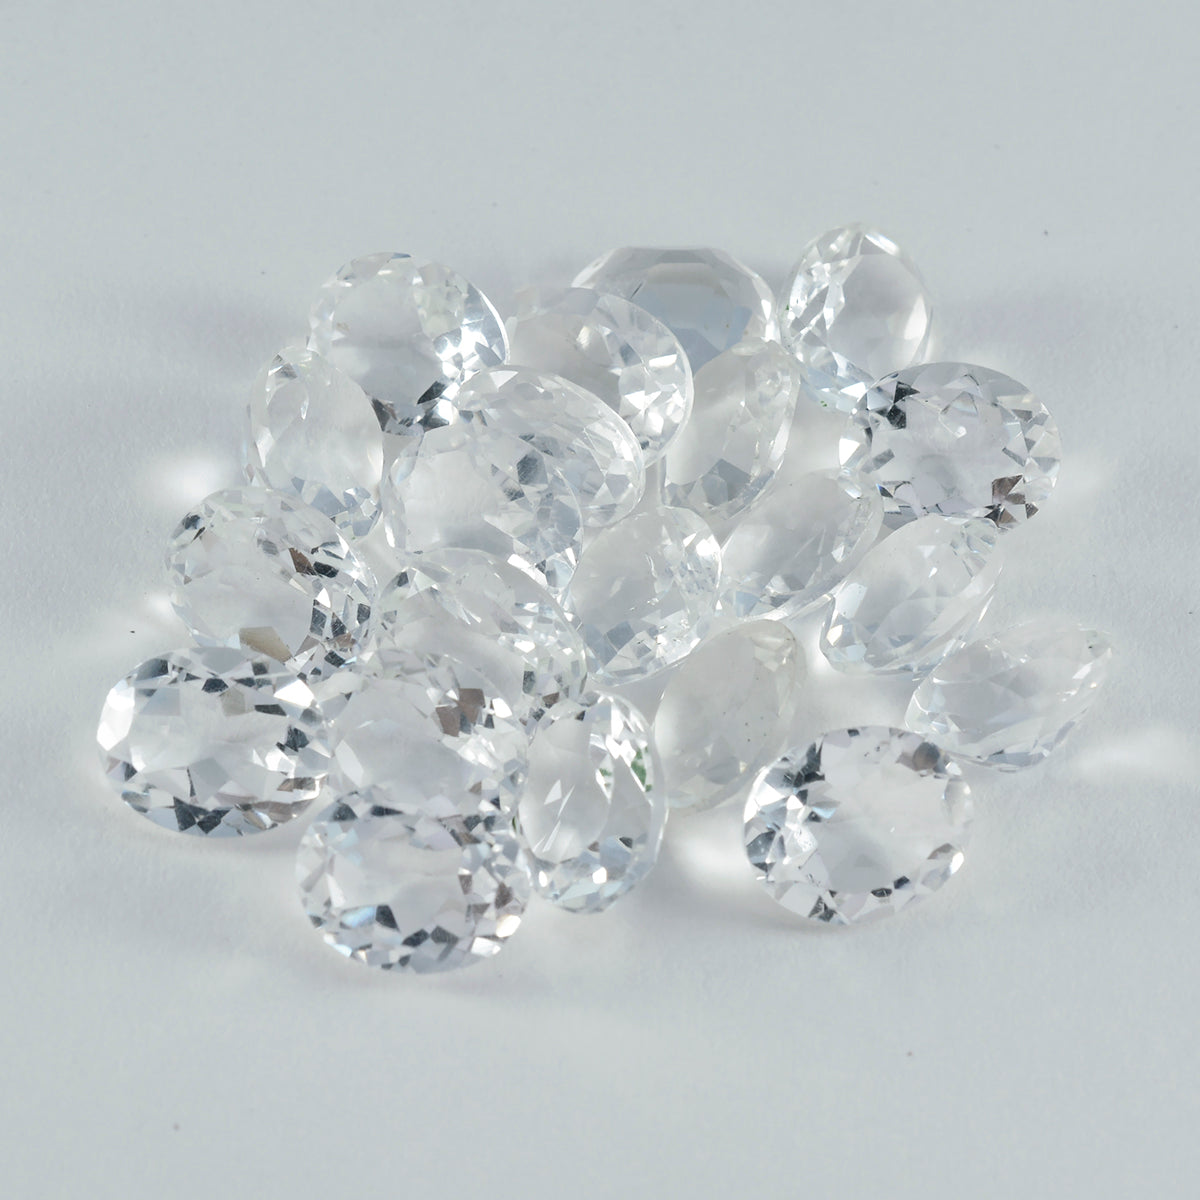 Riyogems 1 Stück weißer Kristallquarz, facettiert, 6 x 8 mm, ovale Form, hübsche Qualitätsedelsteine